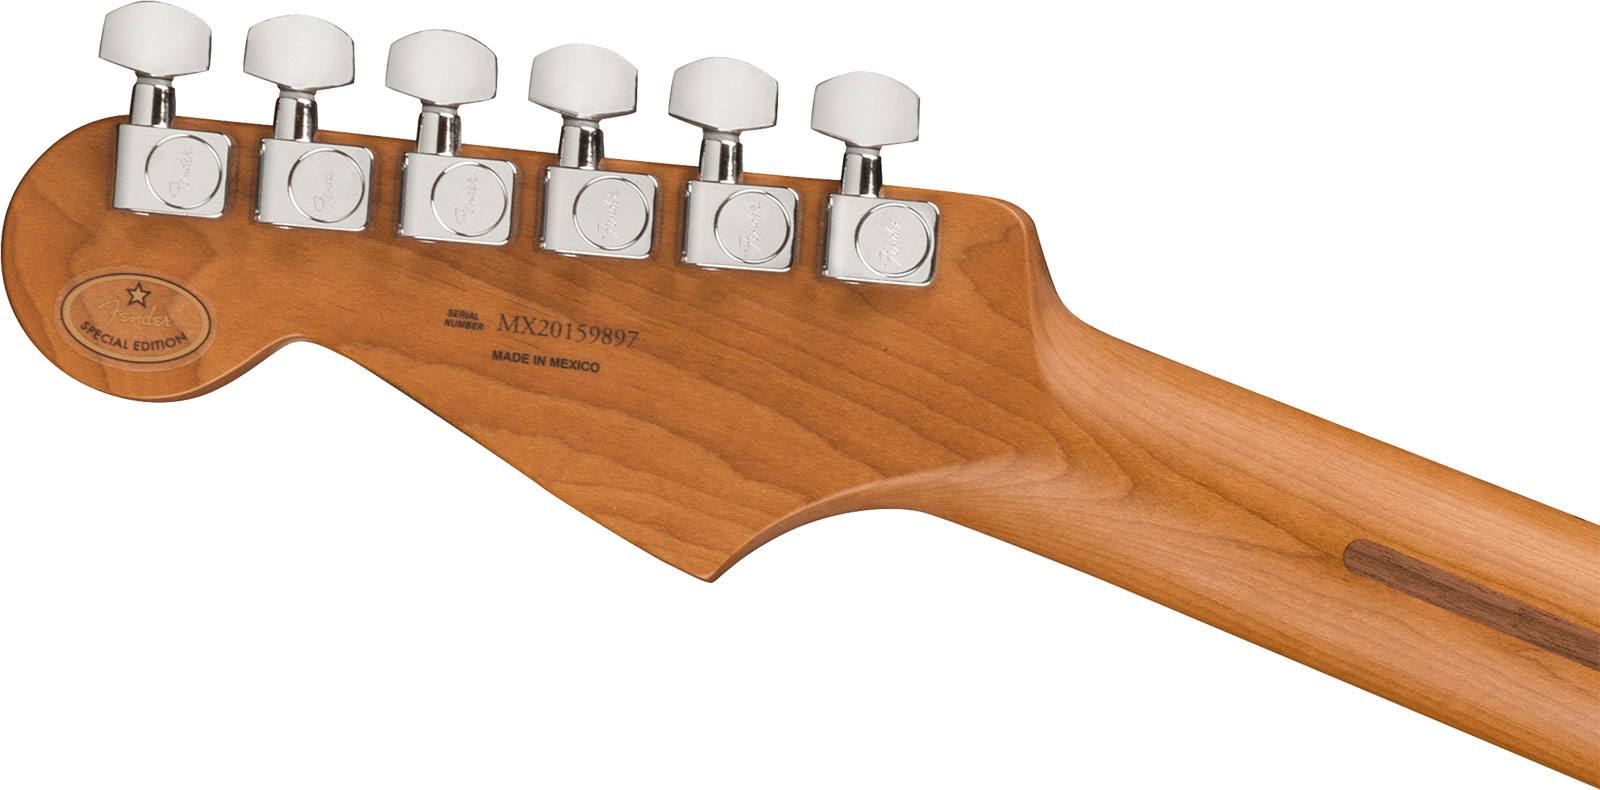 Fender Strat Player Roasted Neck Ltd Mex Hss Trem Mn - Shell Pink - Guitare Électrique Forme Str - Variation 3